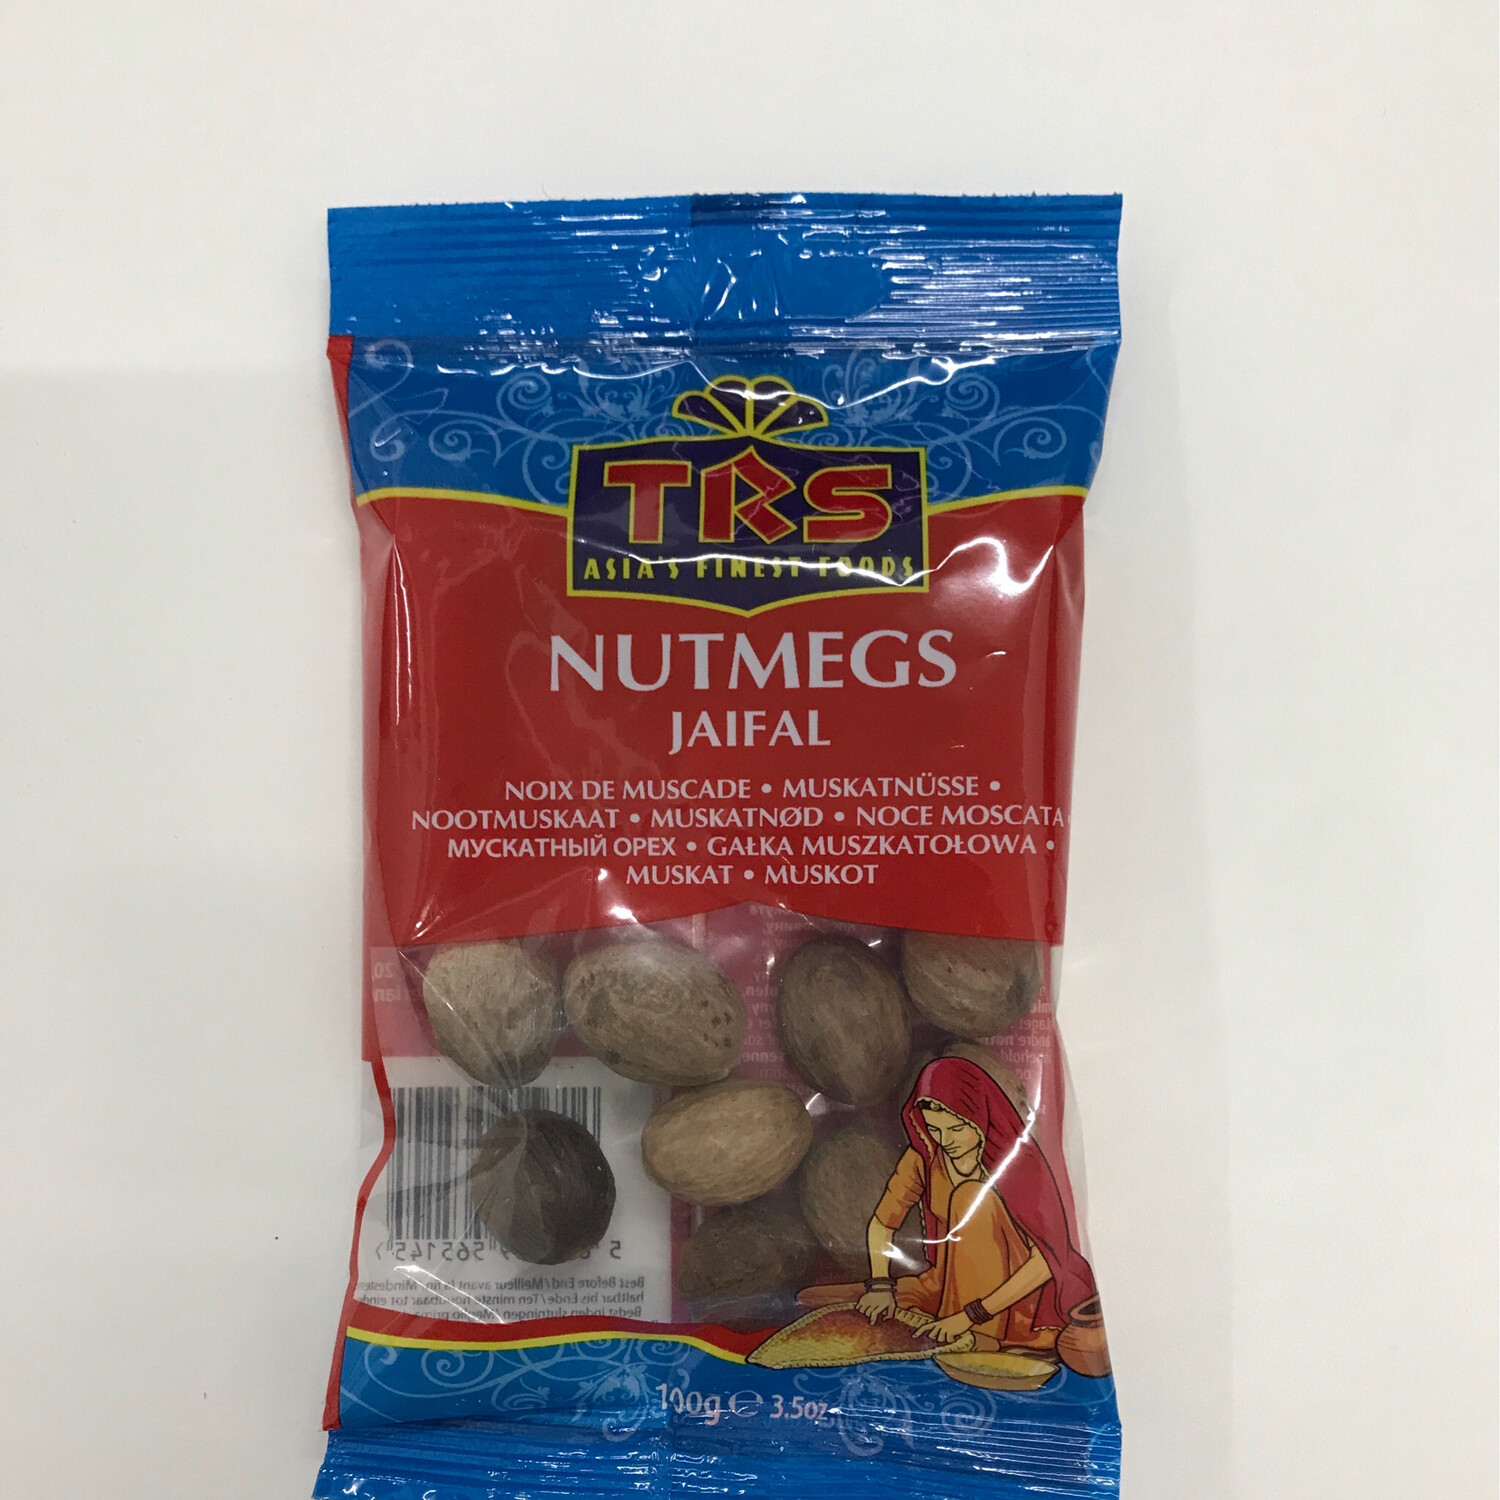 TRS Nutmegs Jaifel 100g